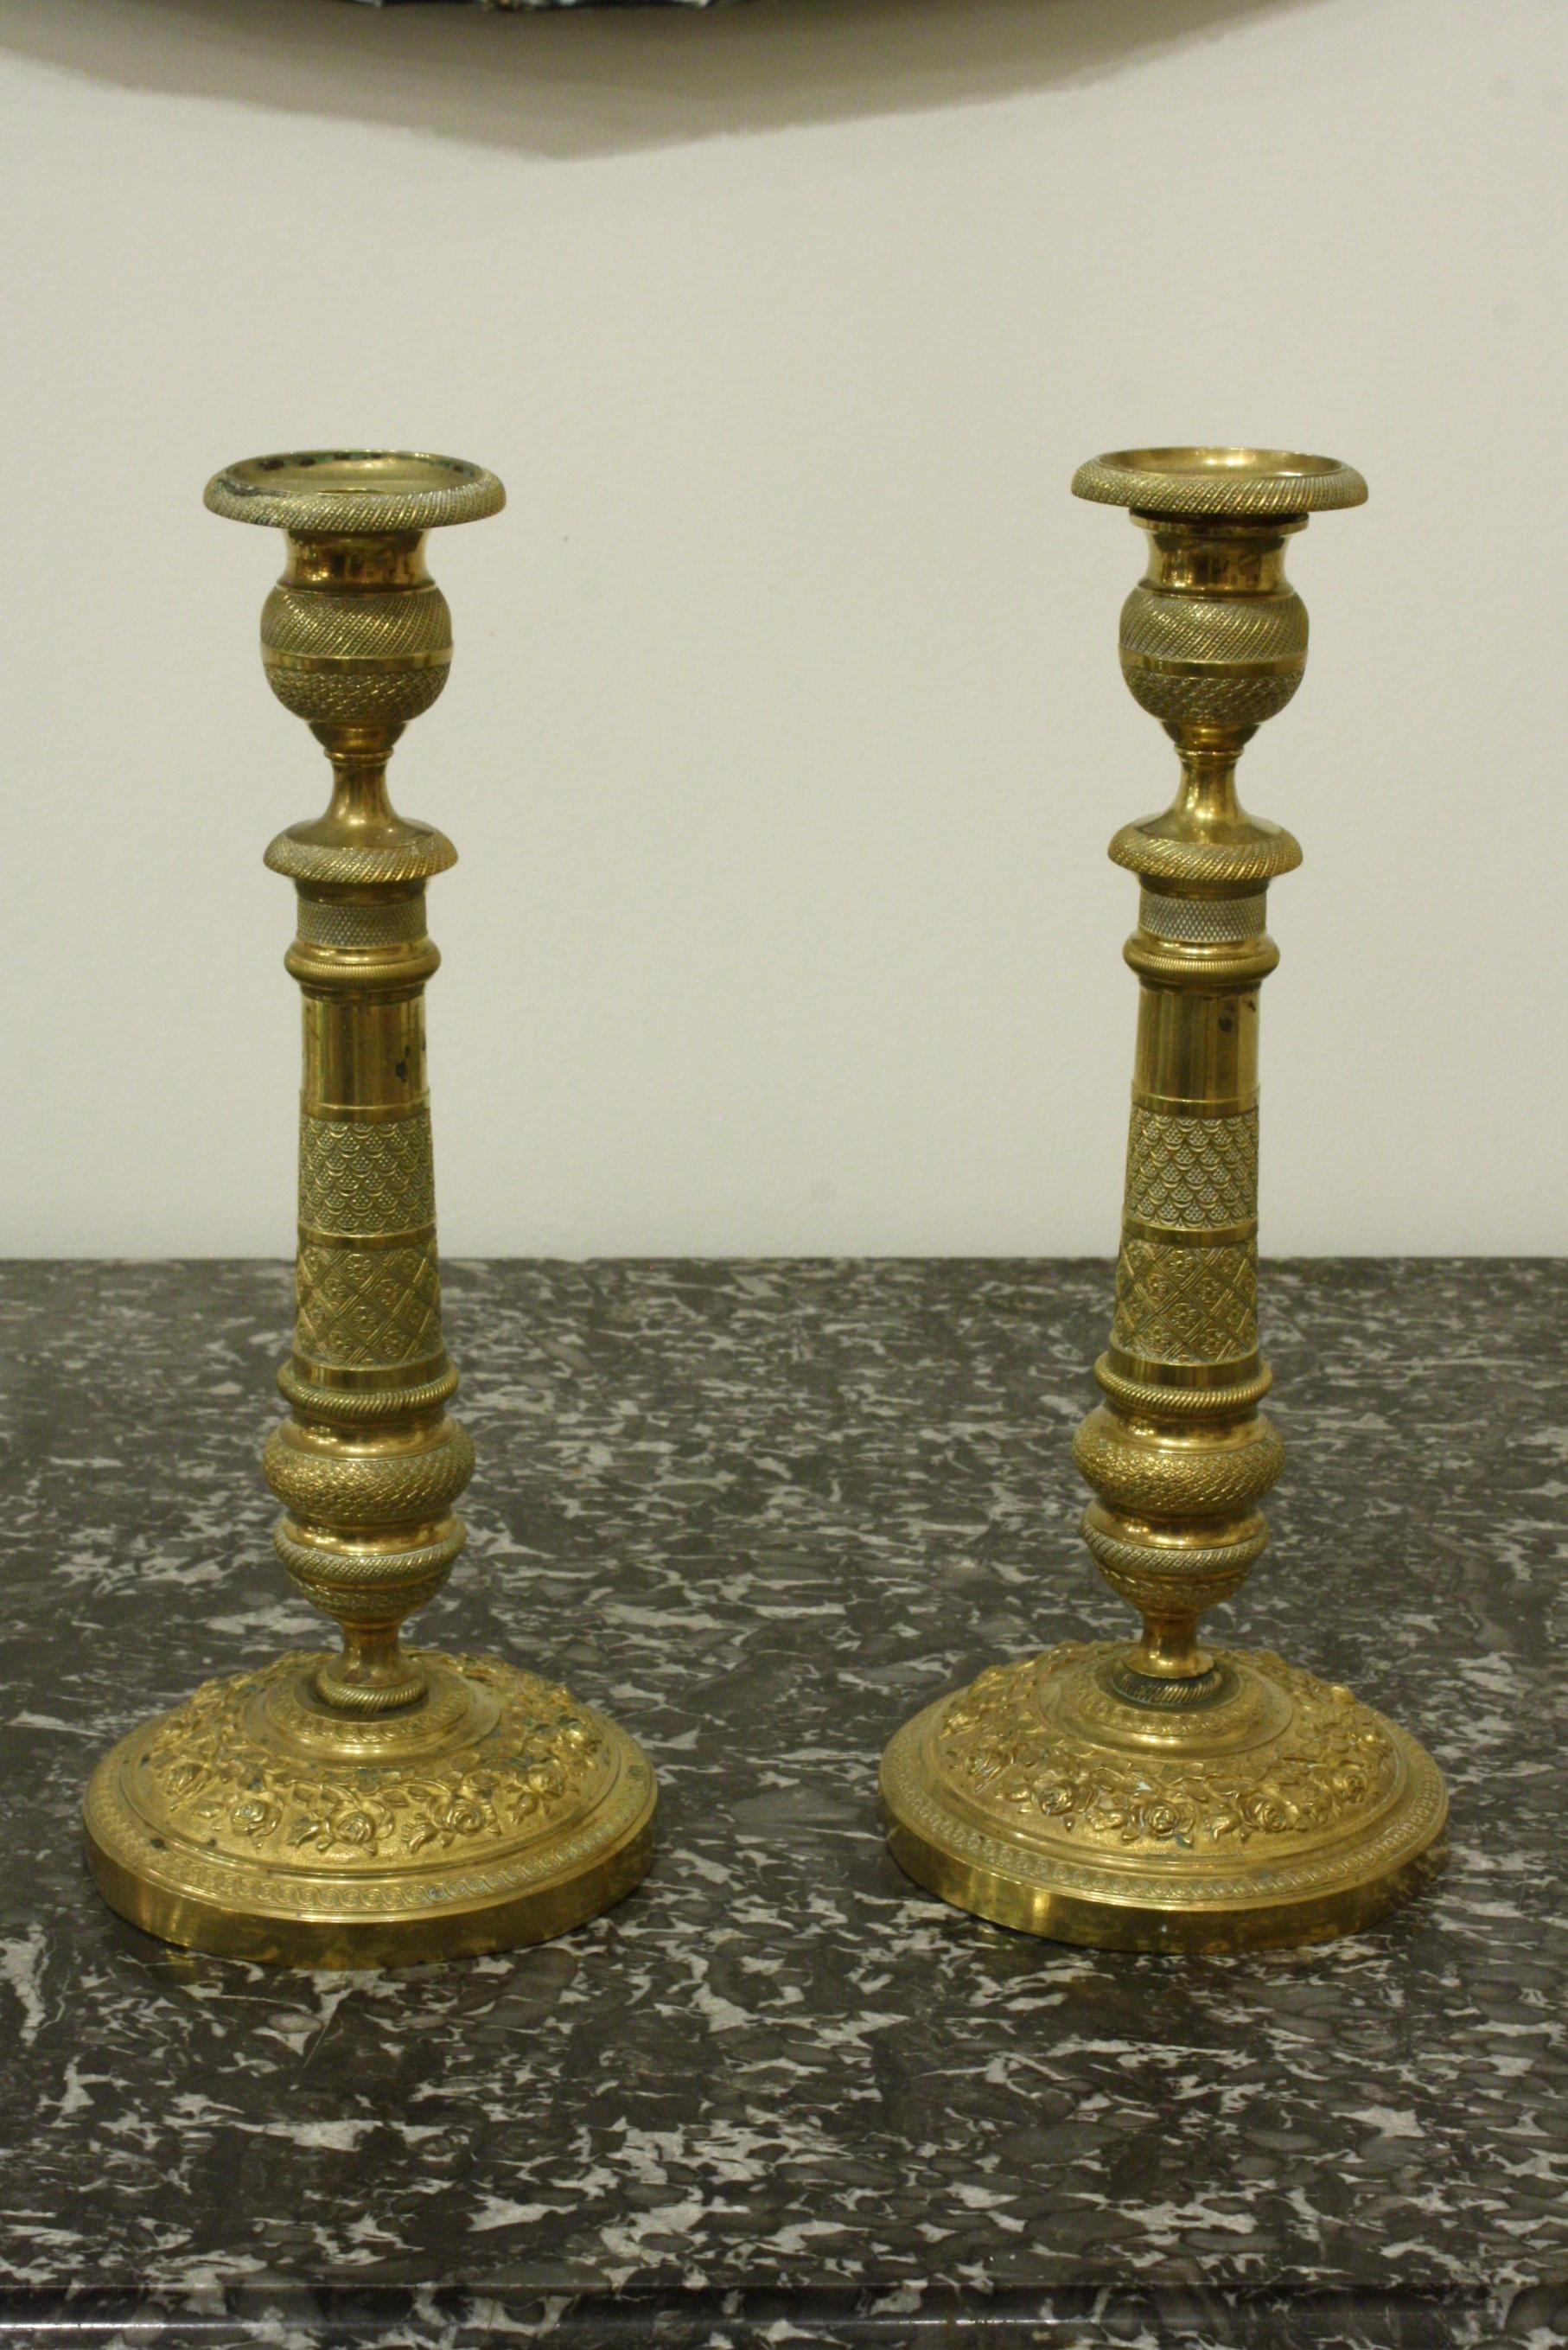 Ein Paar sehr fein ziselierte französische Messing-Kerzenhalter, um 1870 im neoklassizistischen Stil (könnten als Tischlampen elektrifiziert werden).  Die Sockel sind mit Rosenranken verziert.